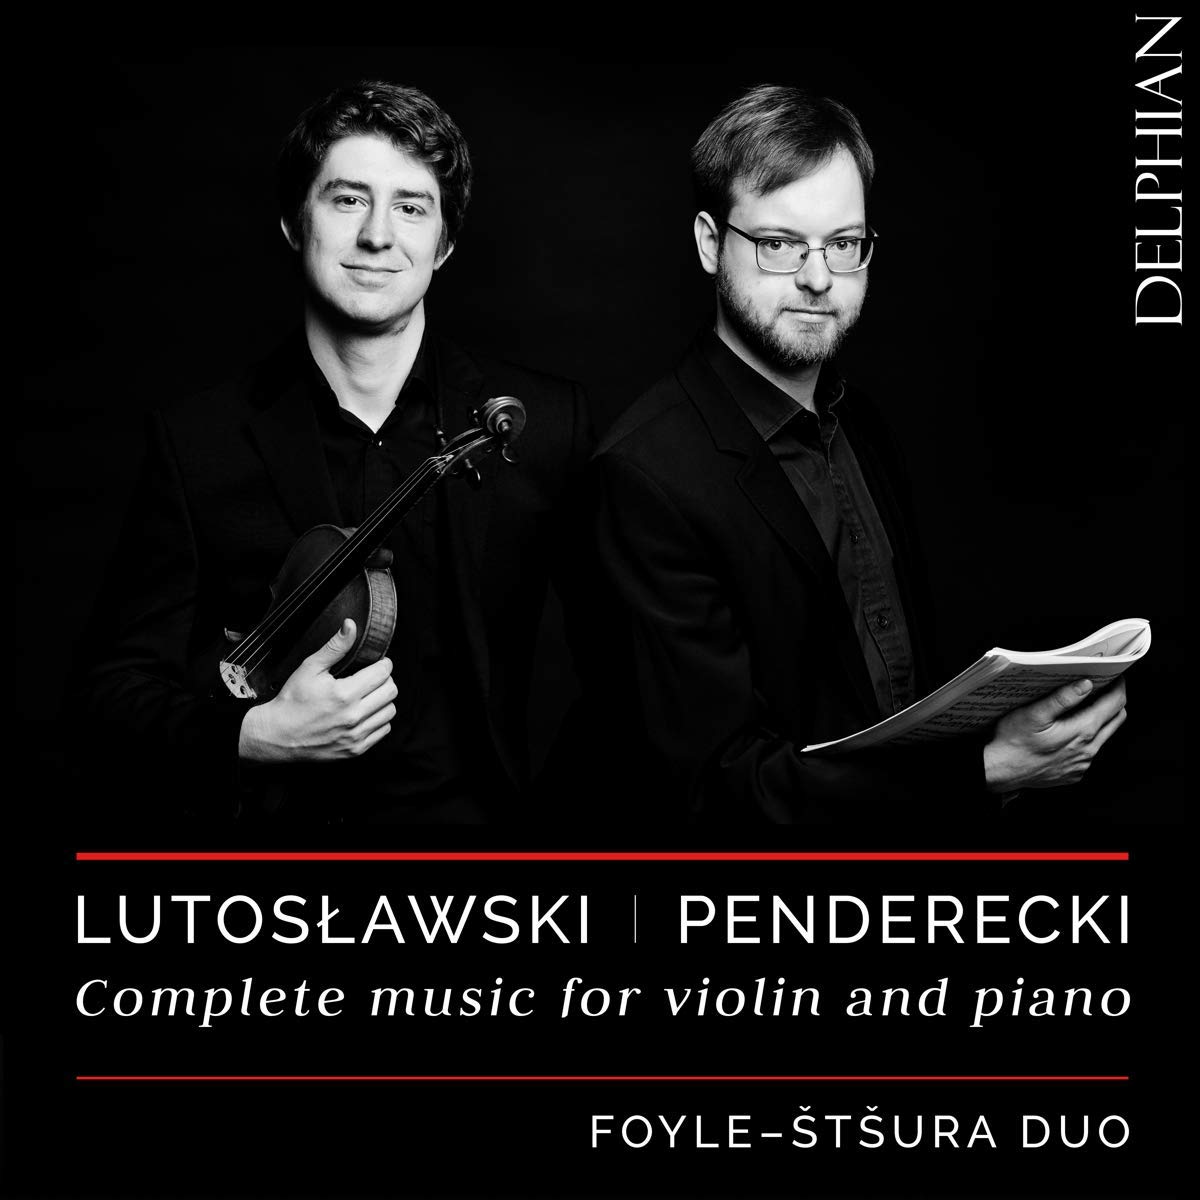 Audio Cd Foyle-Stsura Duo: Lutoslawski & Penderecki - Complete Music For Violin And Piano NUOVO SIGILLATO, EDIZIONE DEL 31/10/2018 SUBITO DISPONIBILE